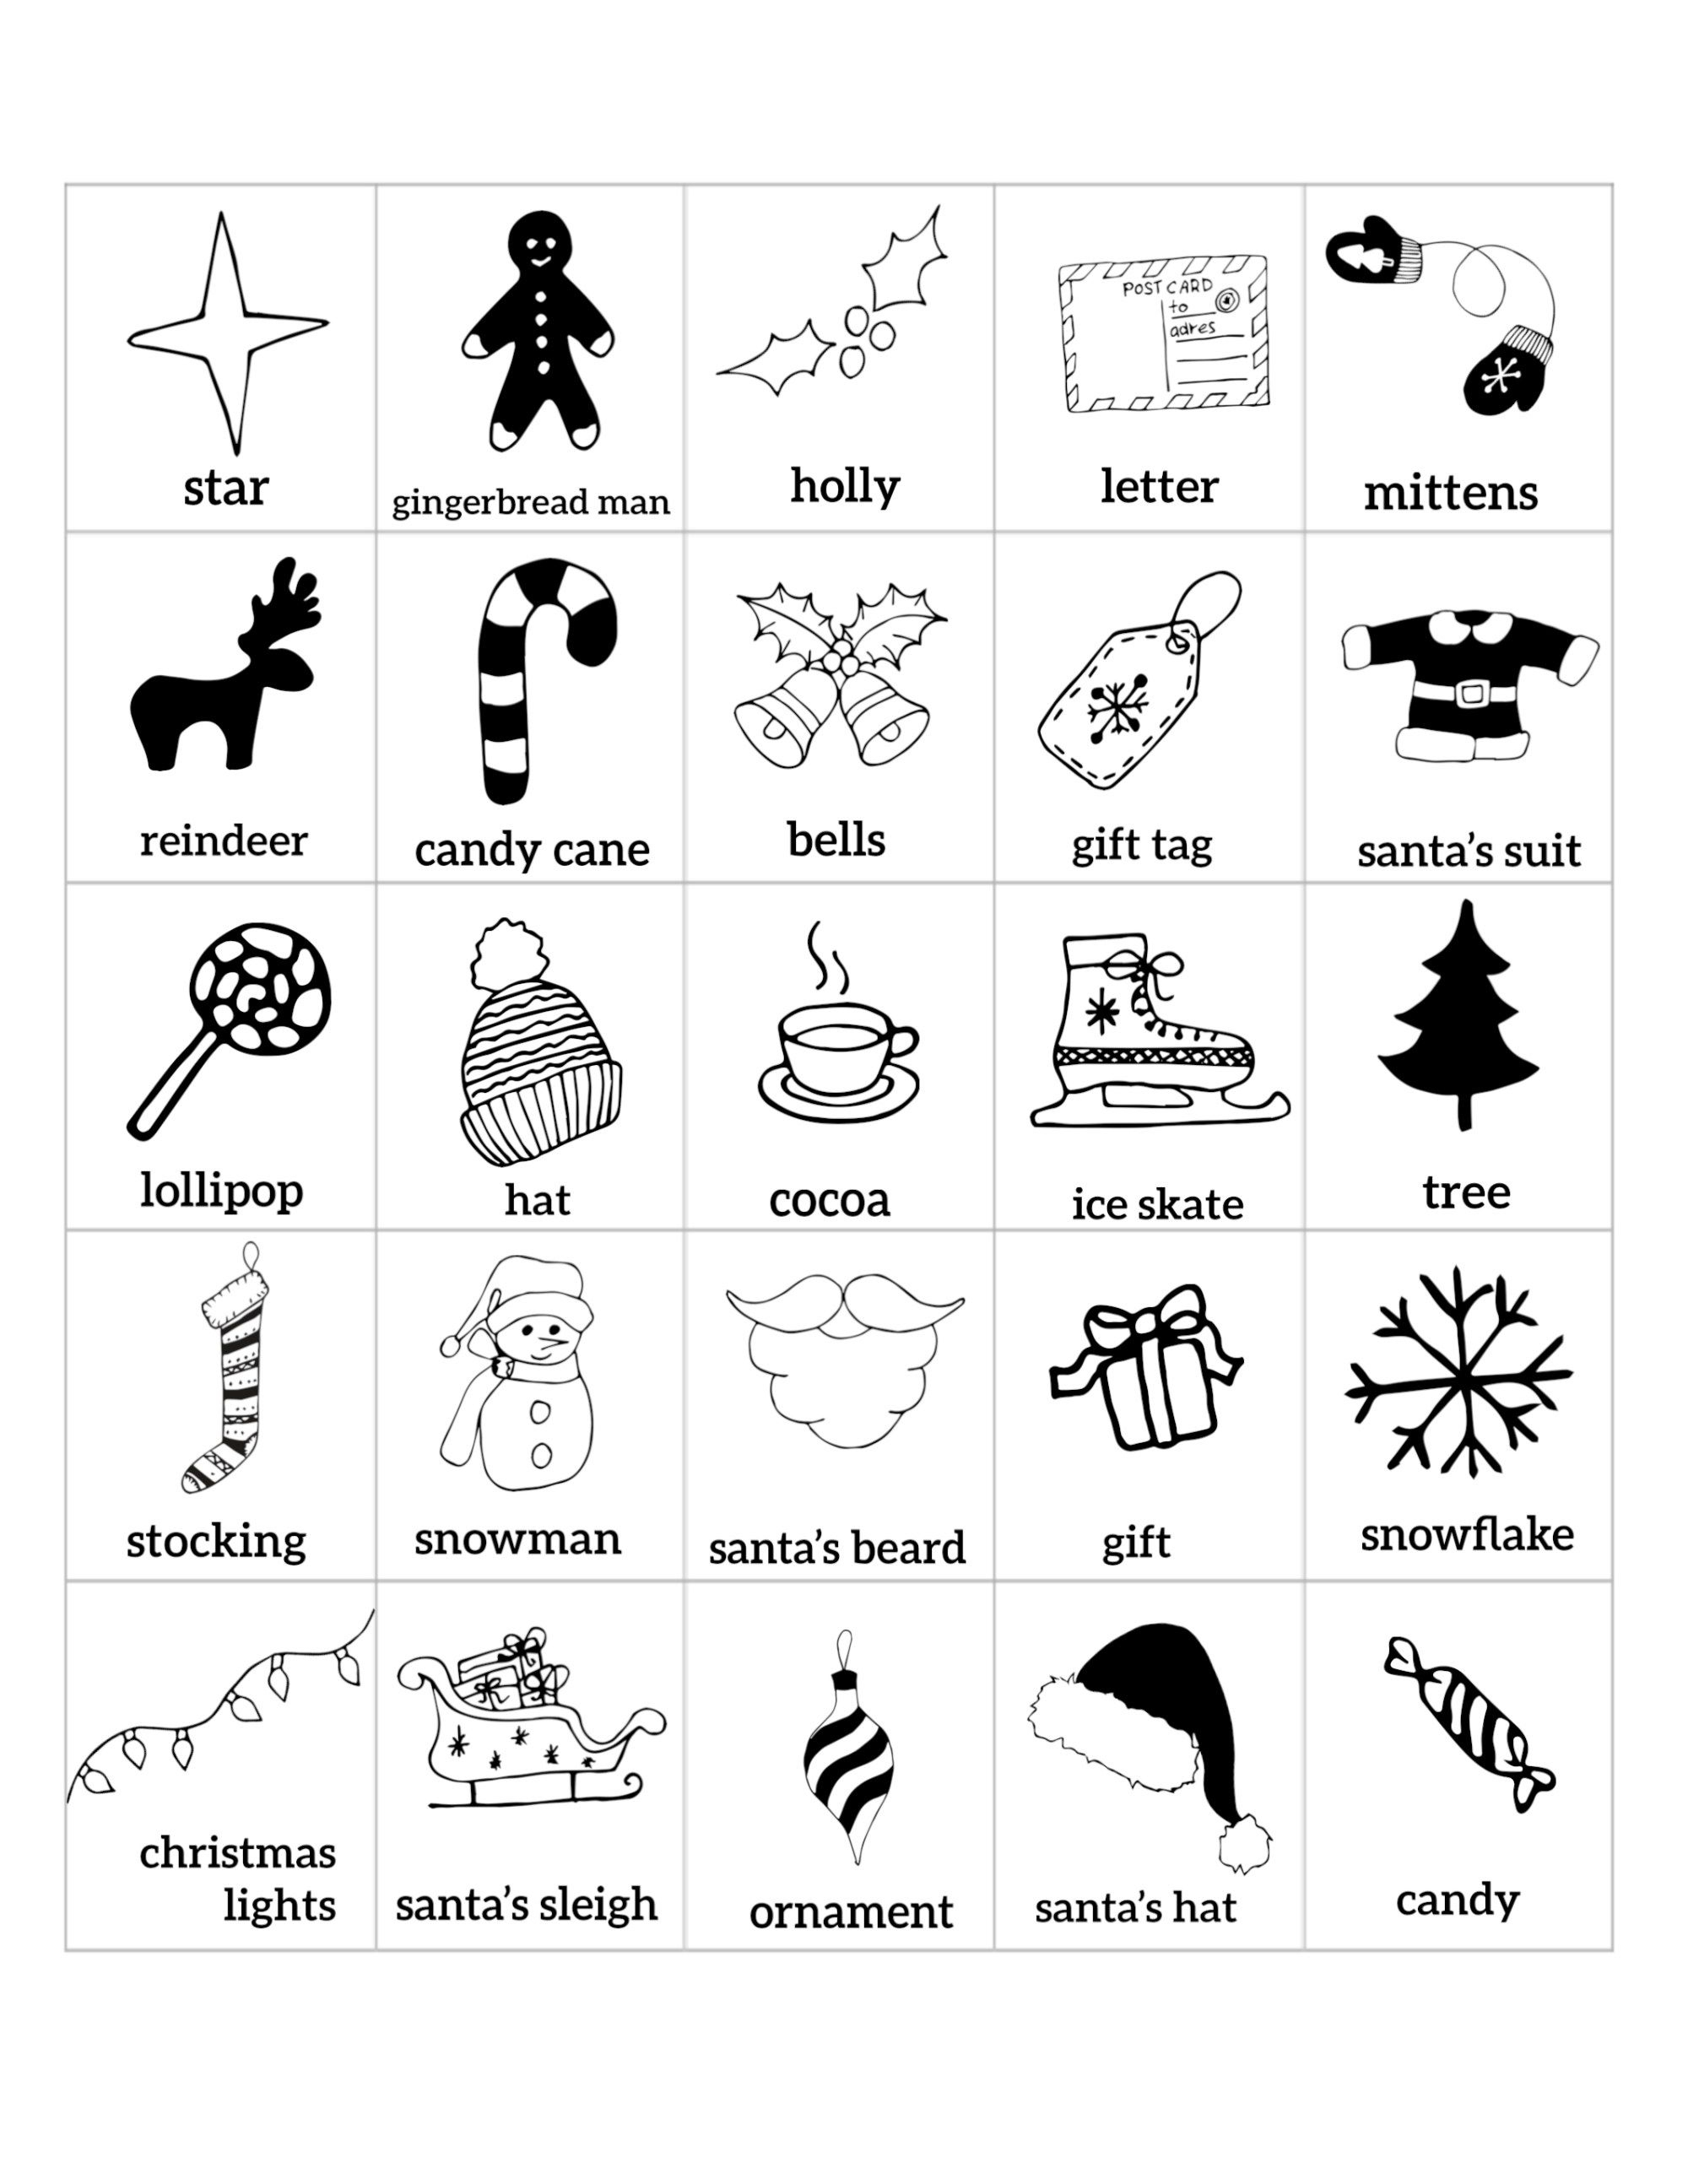 Free Christmas Bingo Printable Cards | Christmas | Pinterest - Free Printable Christmas Bingo Cards